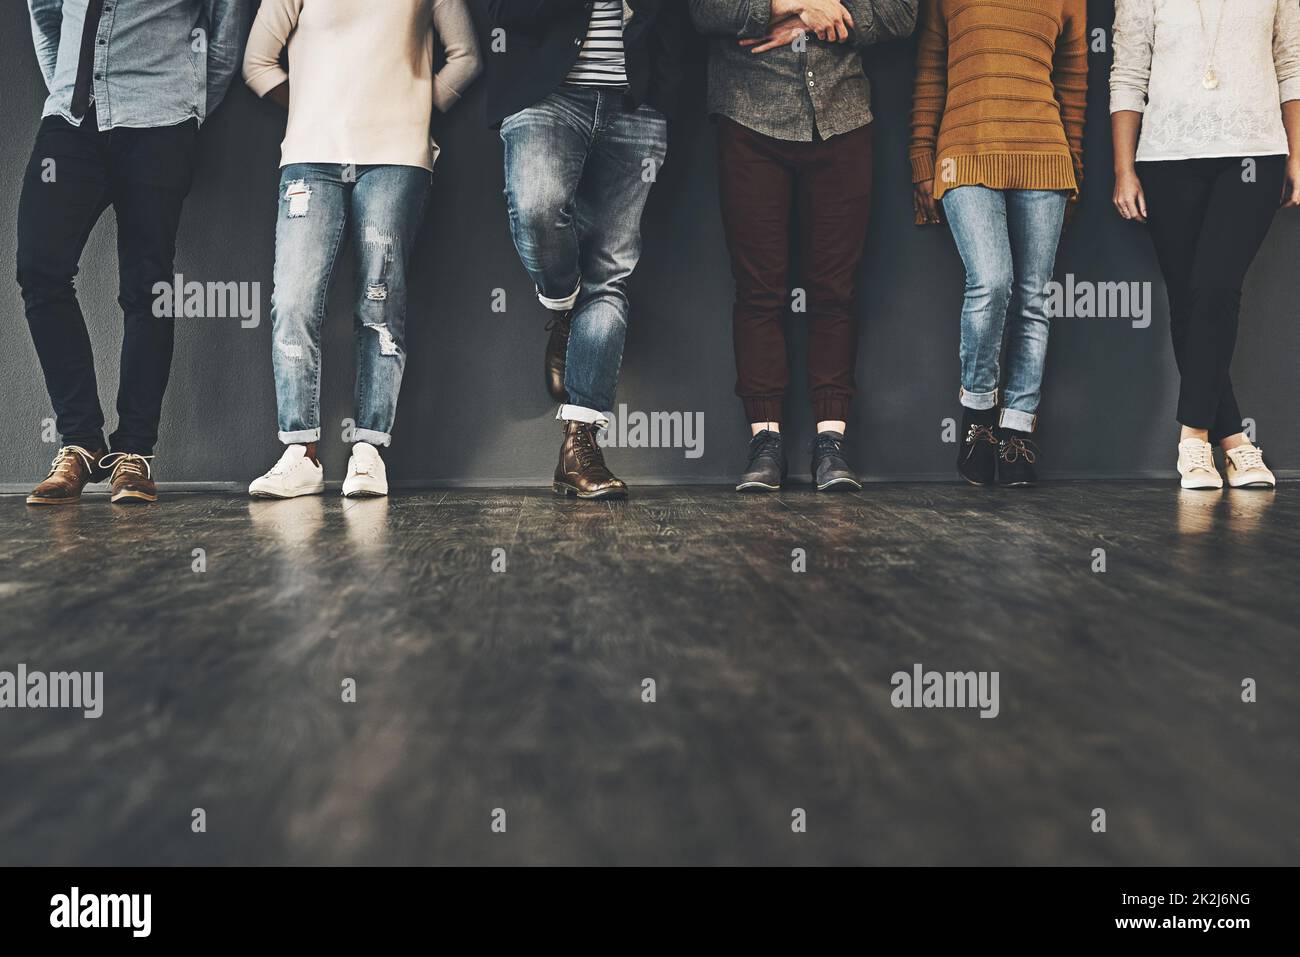 Seien Sie trendy in Ihrer Haltung. Studioaufnahme einer Gruppe von nicht erkennbaren Menschen, die vor einem grauen Hintergrund stehen. Stockfoto